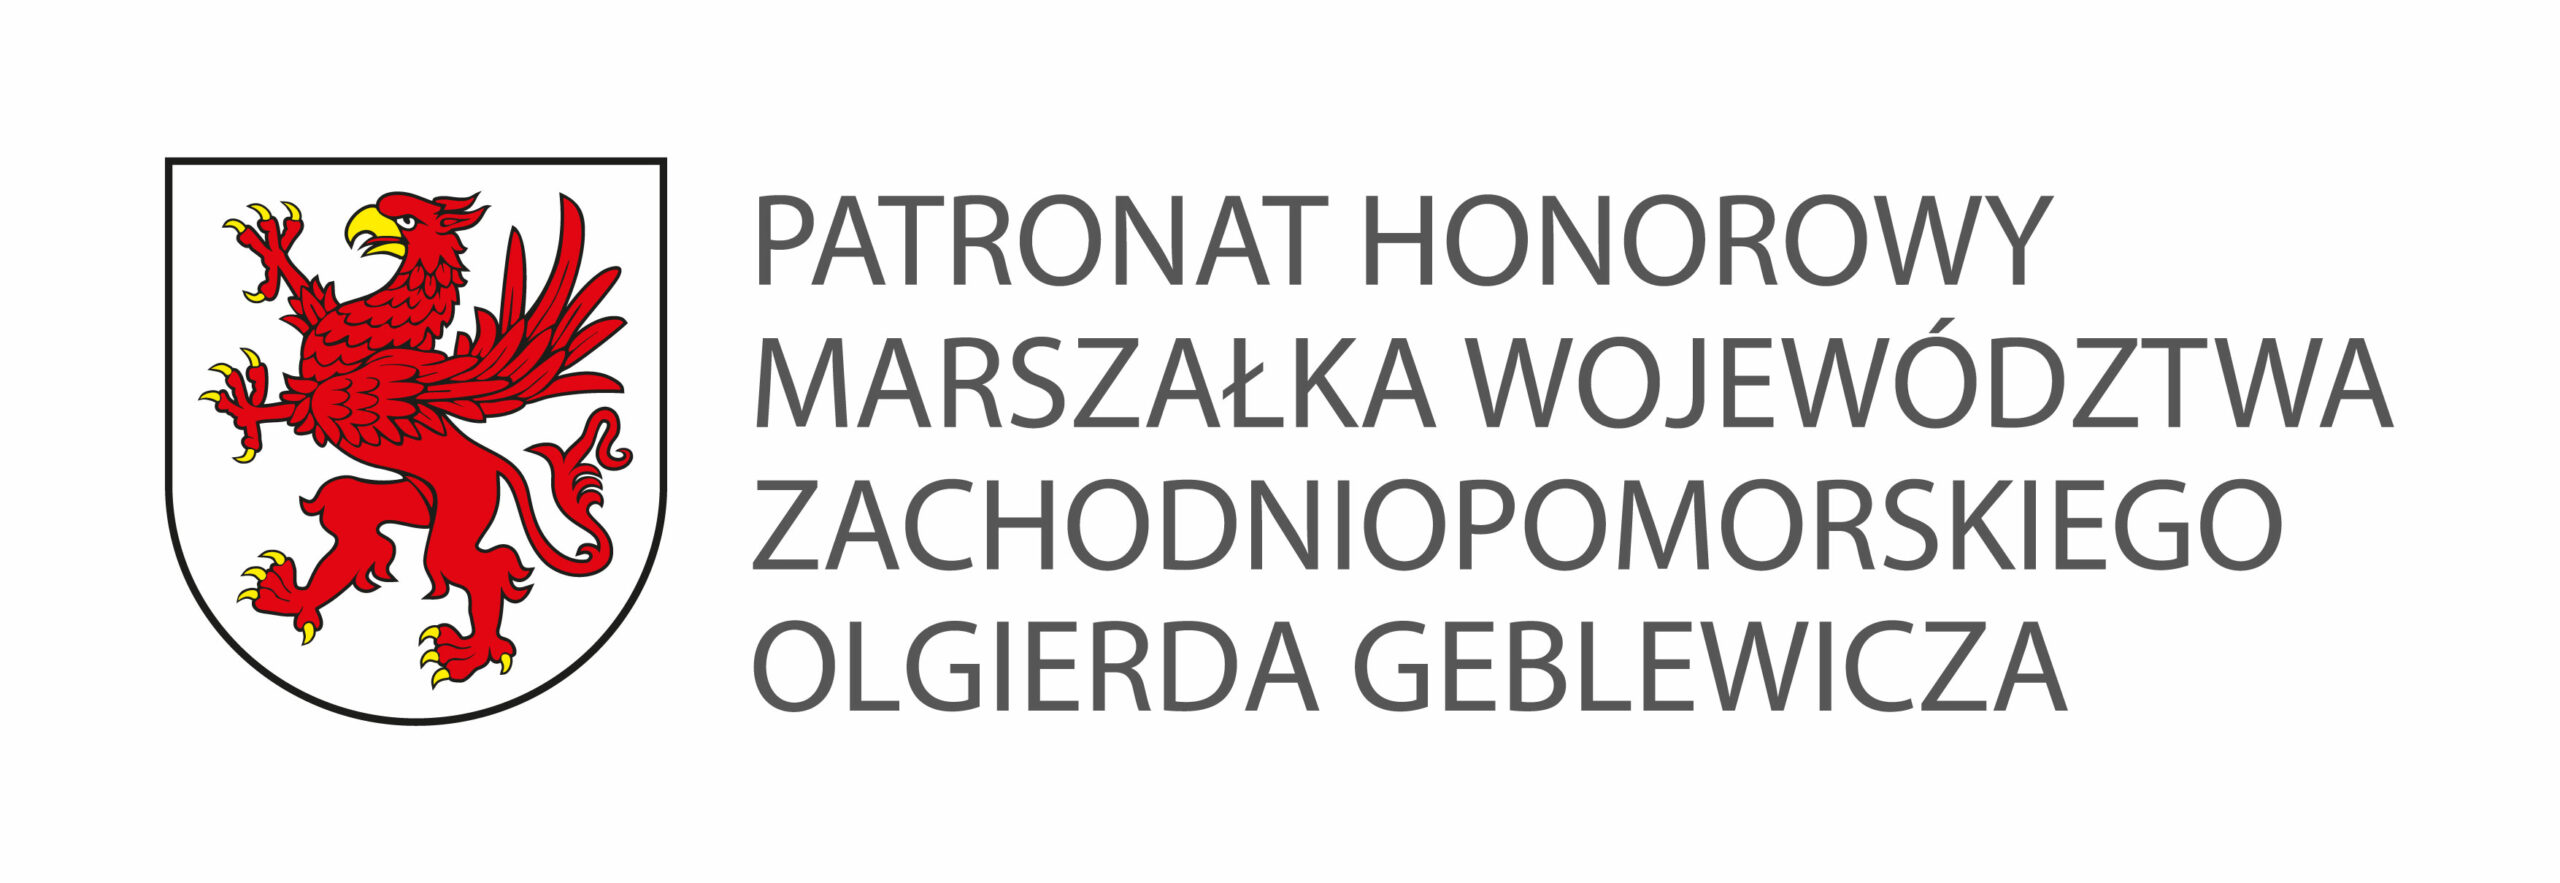 Logo: Patronat Honorowy Marszałka Województwa Zachodniopomorskiego Olgierda Geblewicza